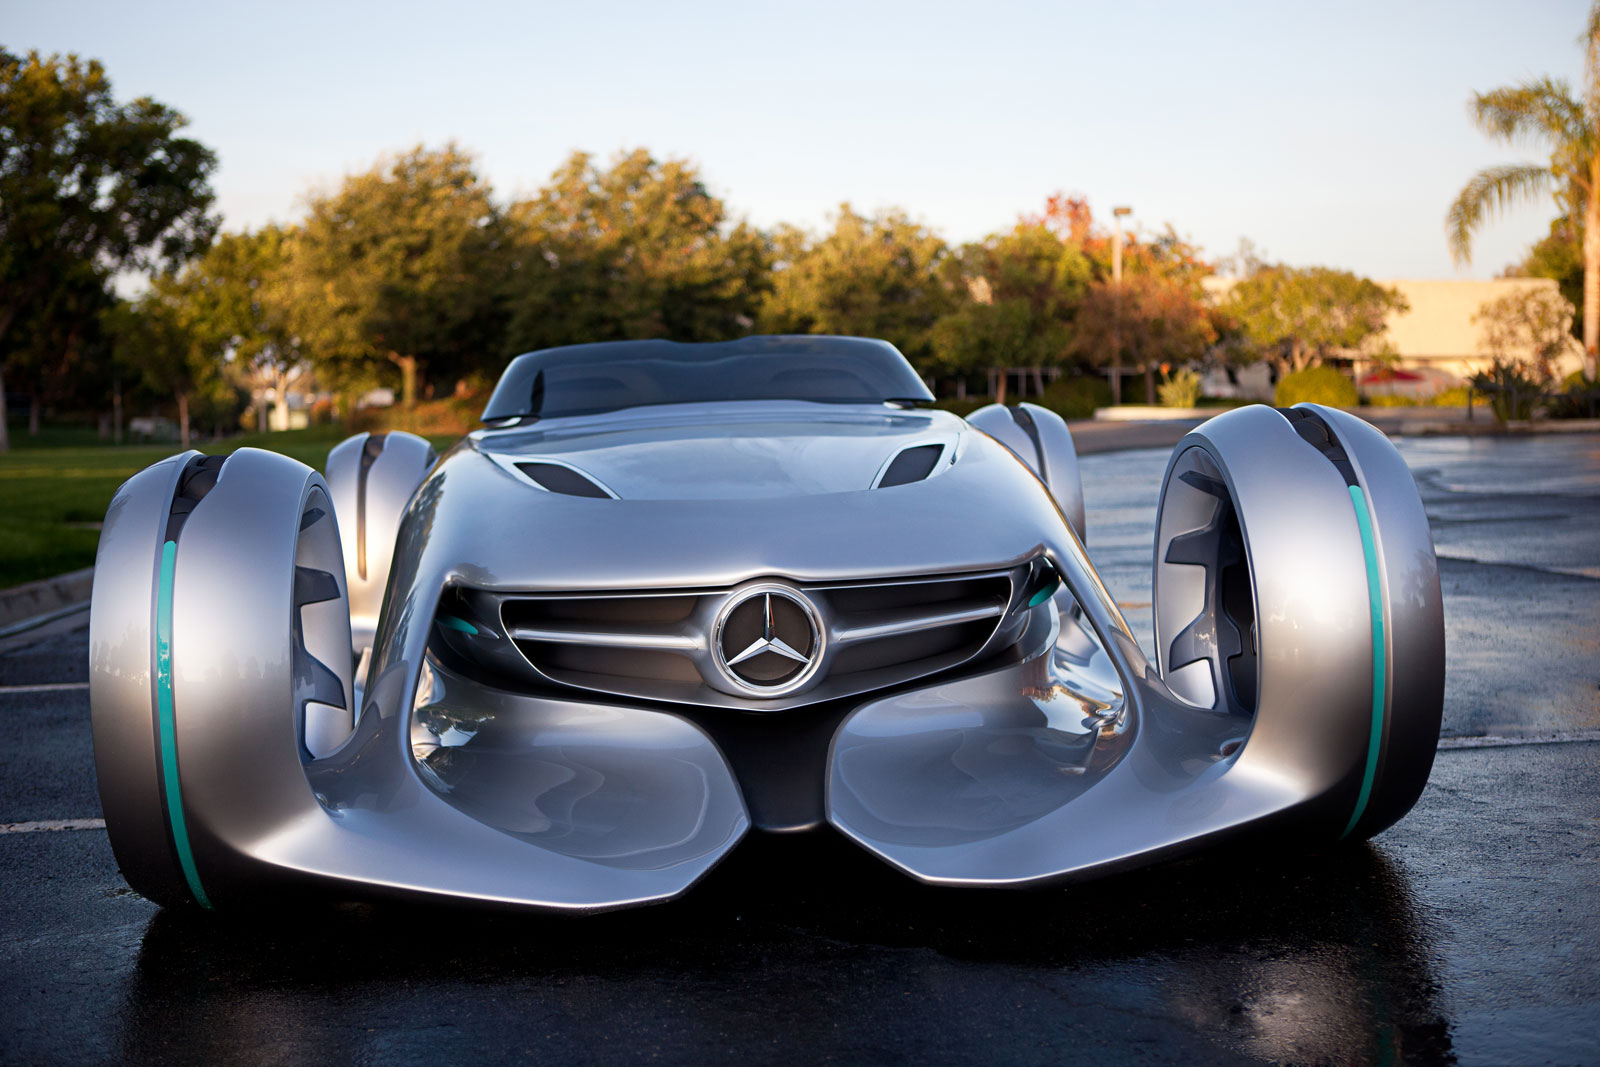 2012 Mercedes Benz Silver Arrow Concept